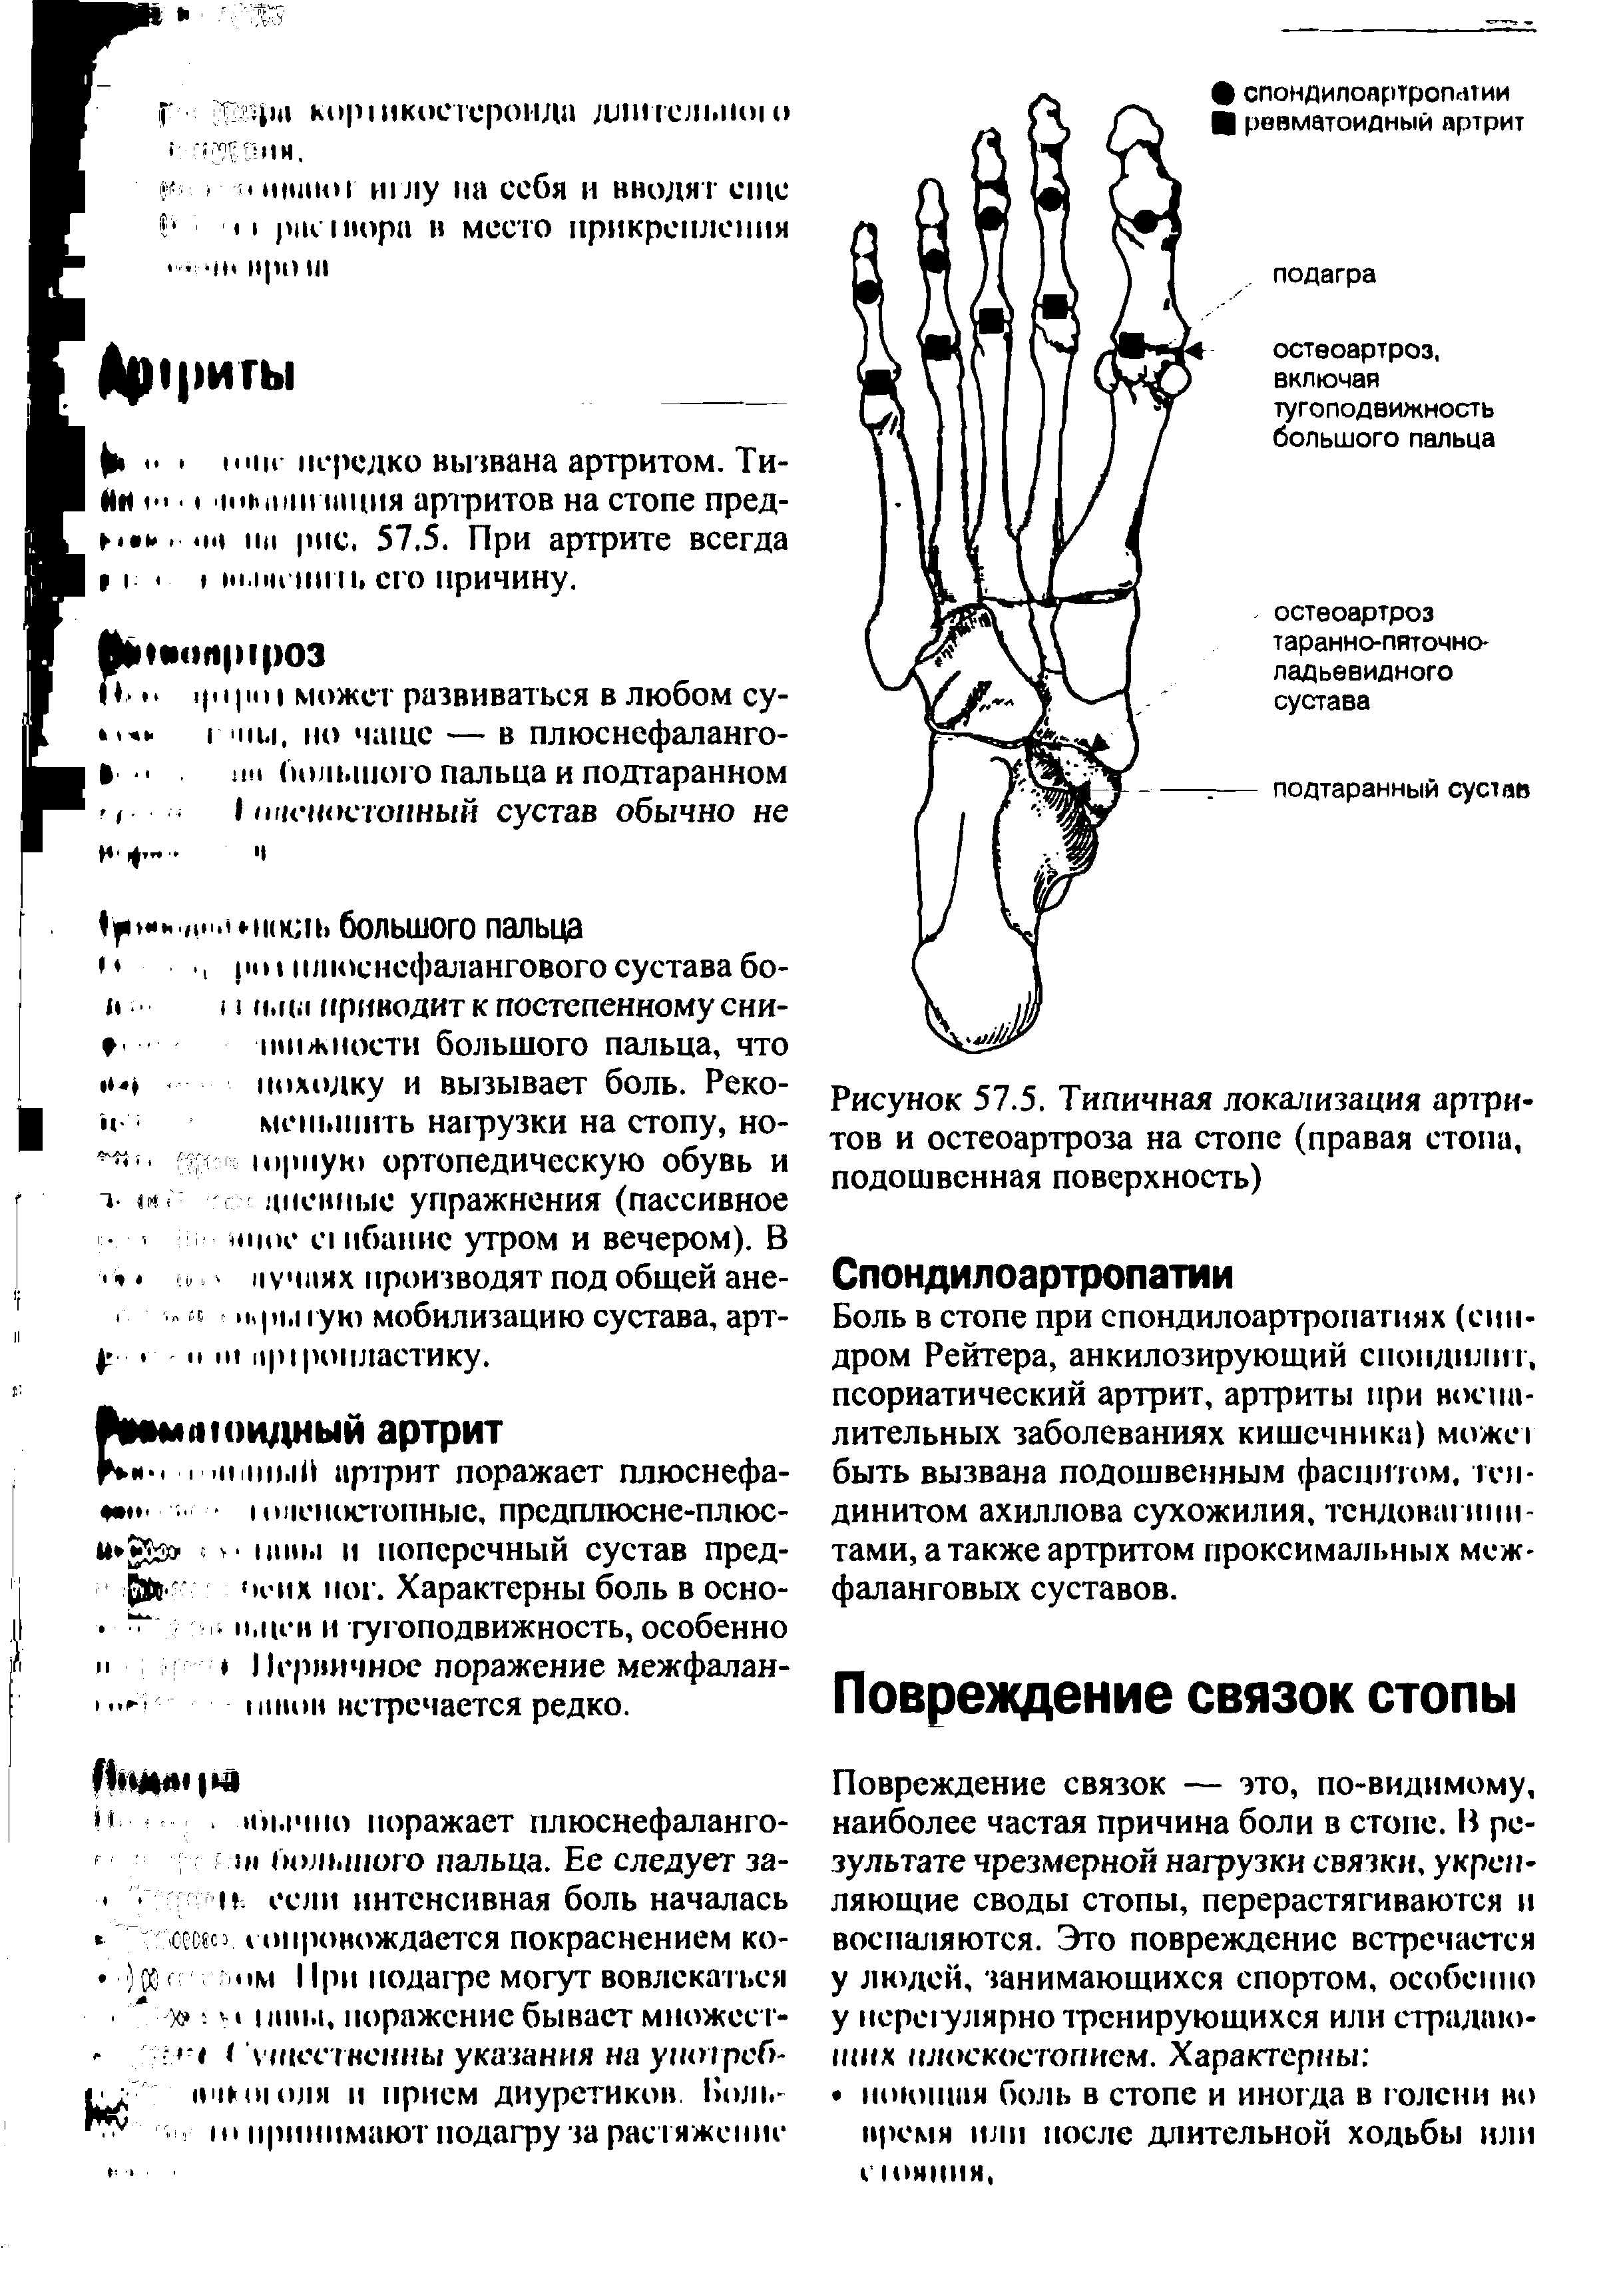 Рисунок 57.5. Типичная локализация артритов и остеоартроза на стопе (правая стопа, подошвенная поверхность)...